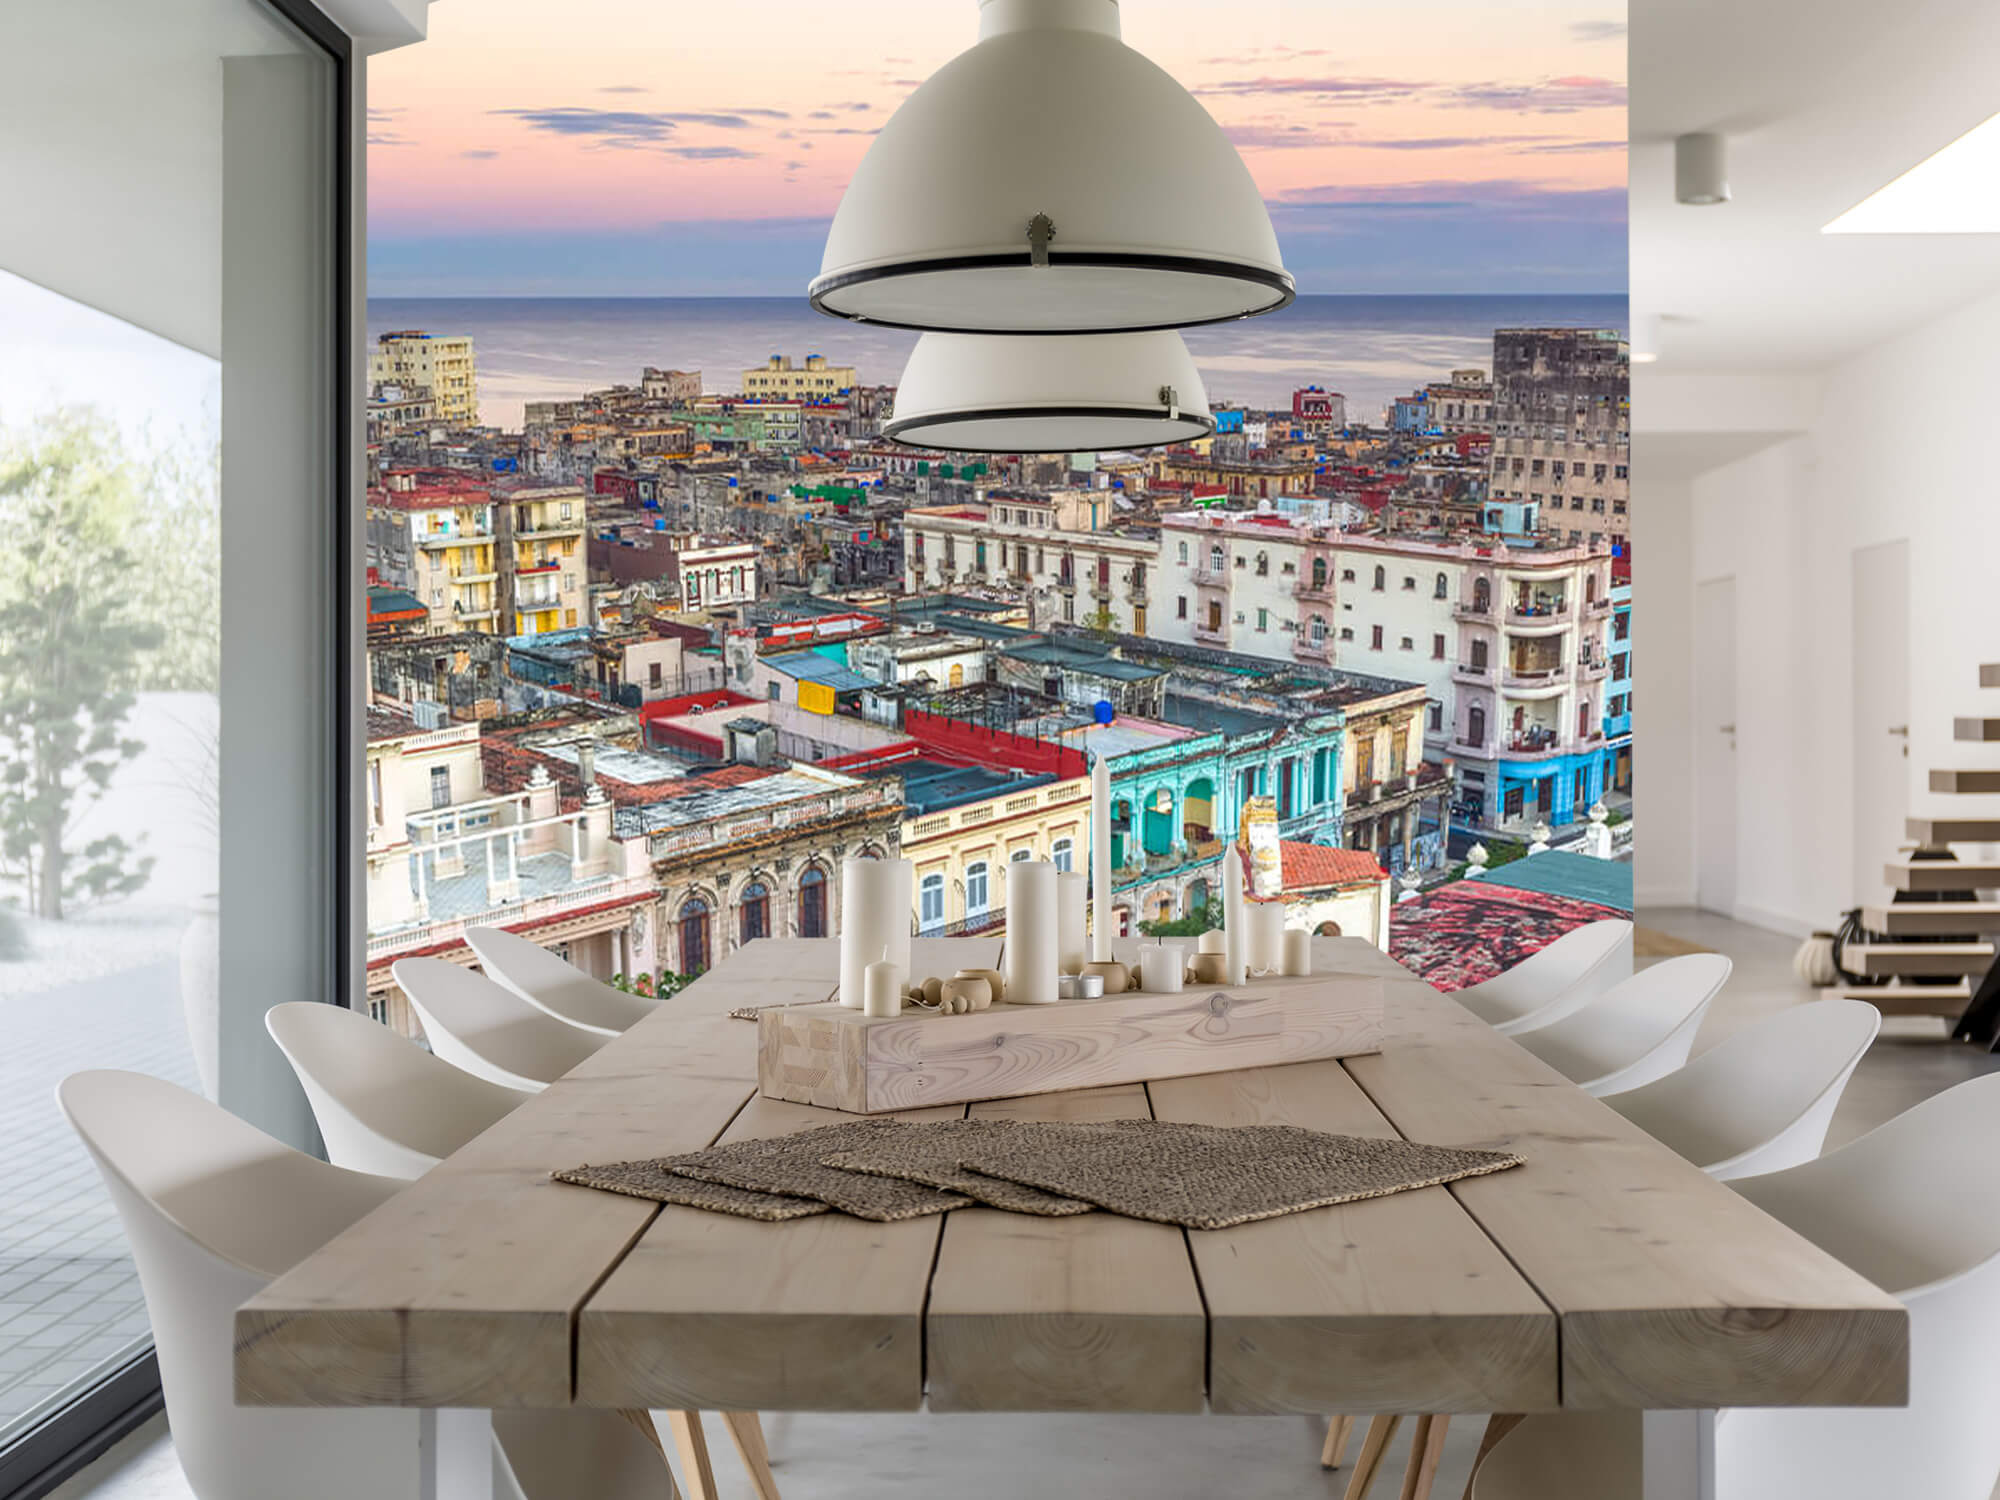  Papel pintado con La Habana desde arriba - Salón 2